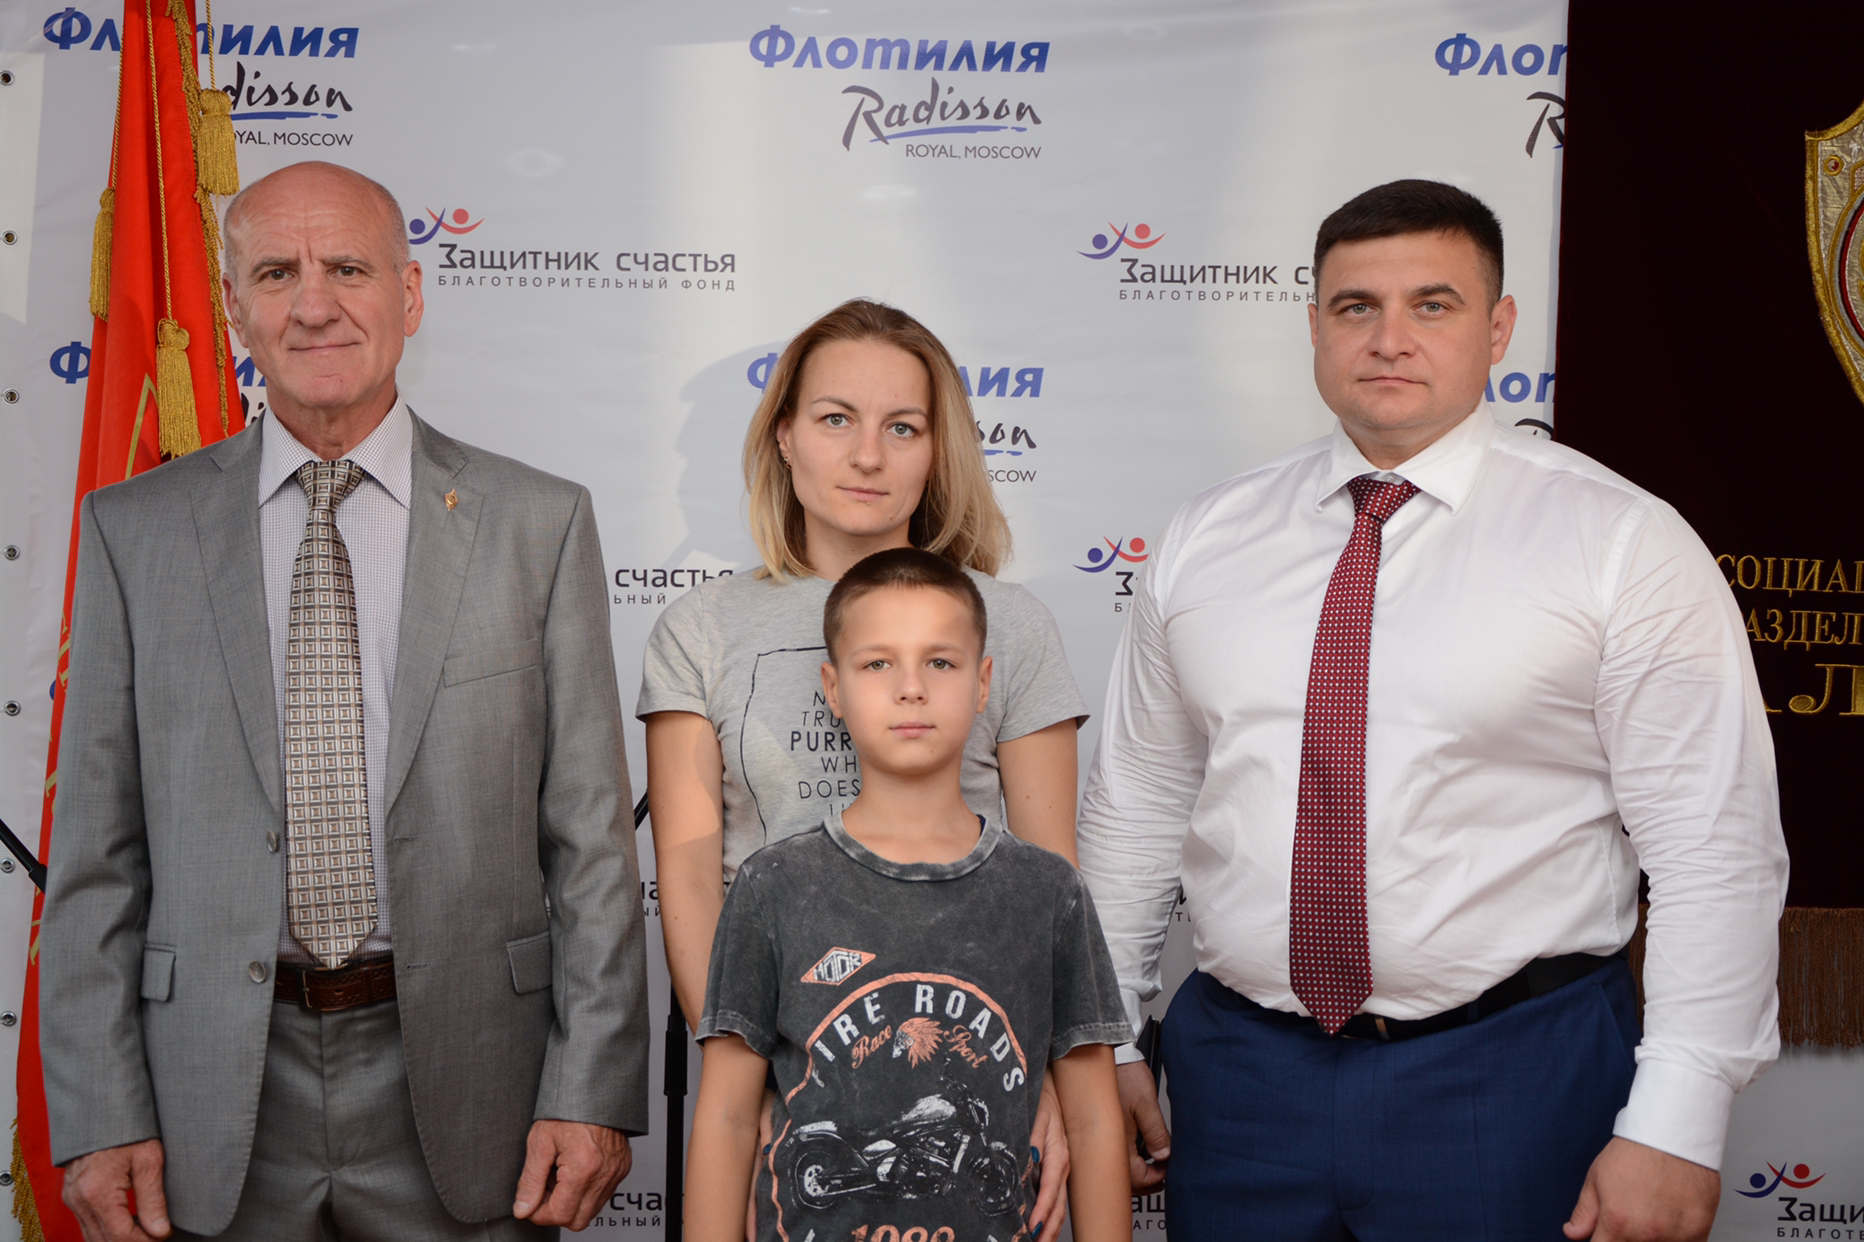 Семья погибшего сотрудника Росгвардии из Казани побывала в г. Москве на мероприятии, организованном благотворительным фондом «Защитник счастья» в День города